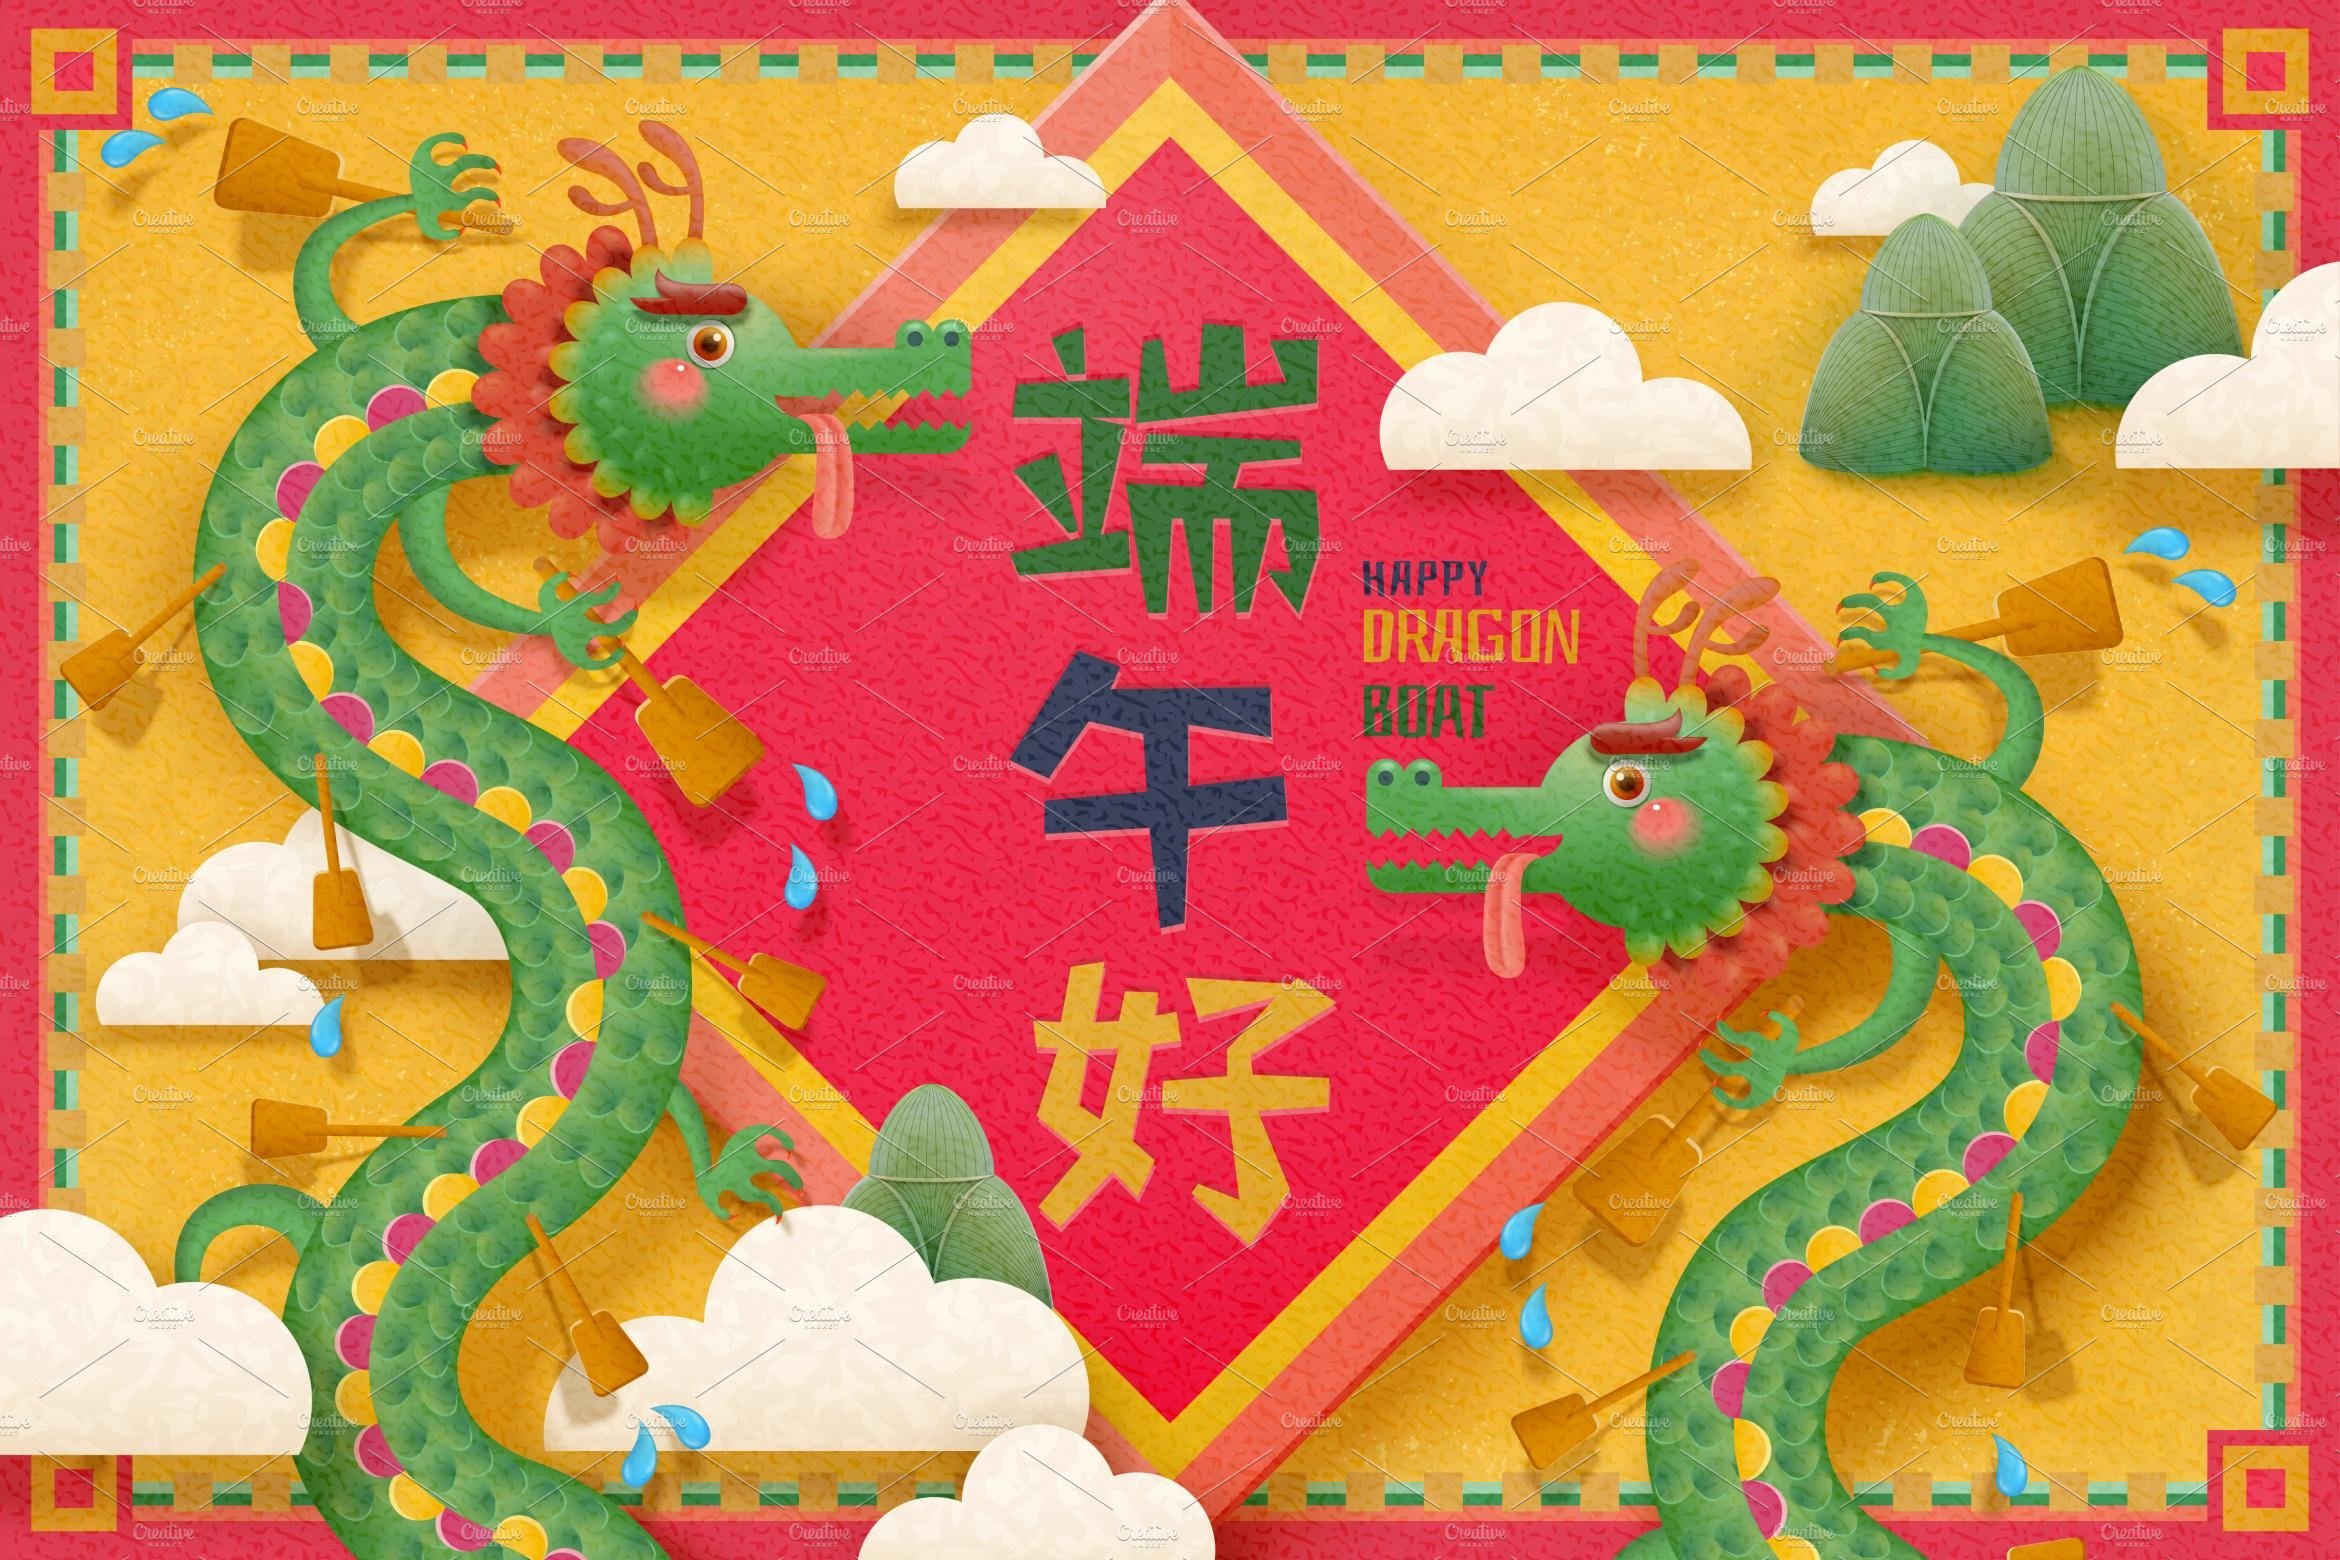 Dragon boat festival cover image.